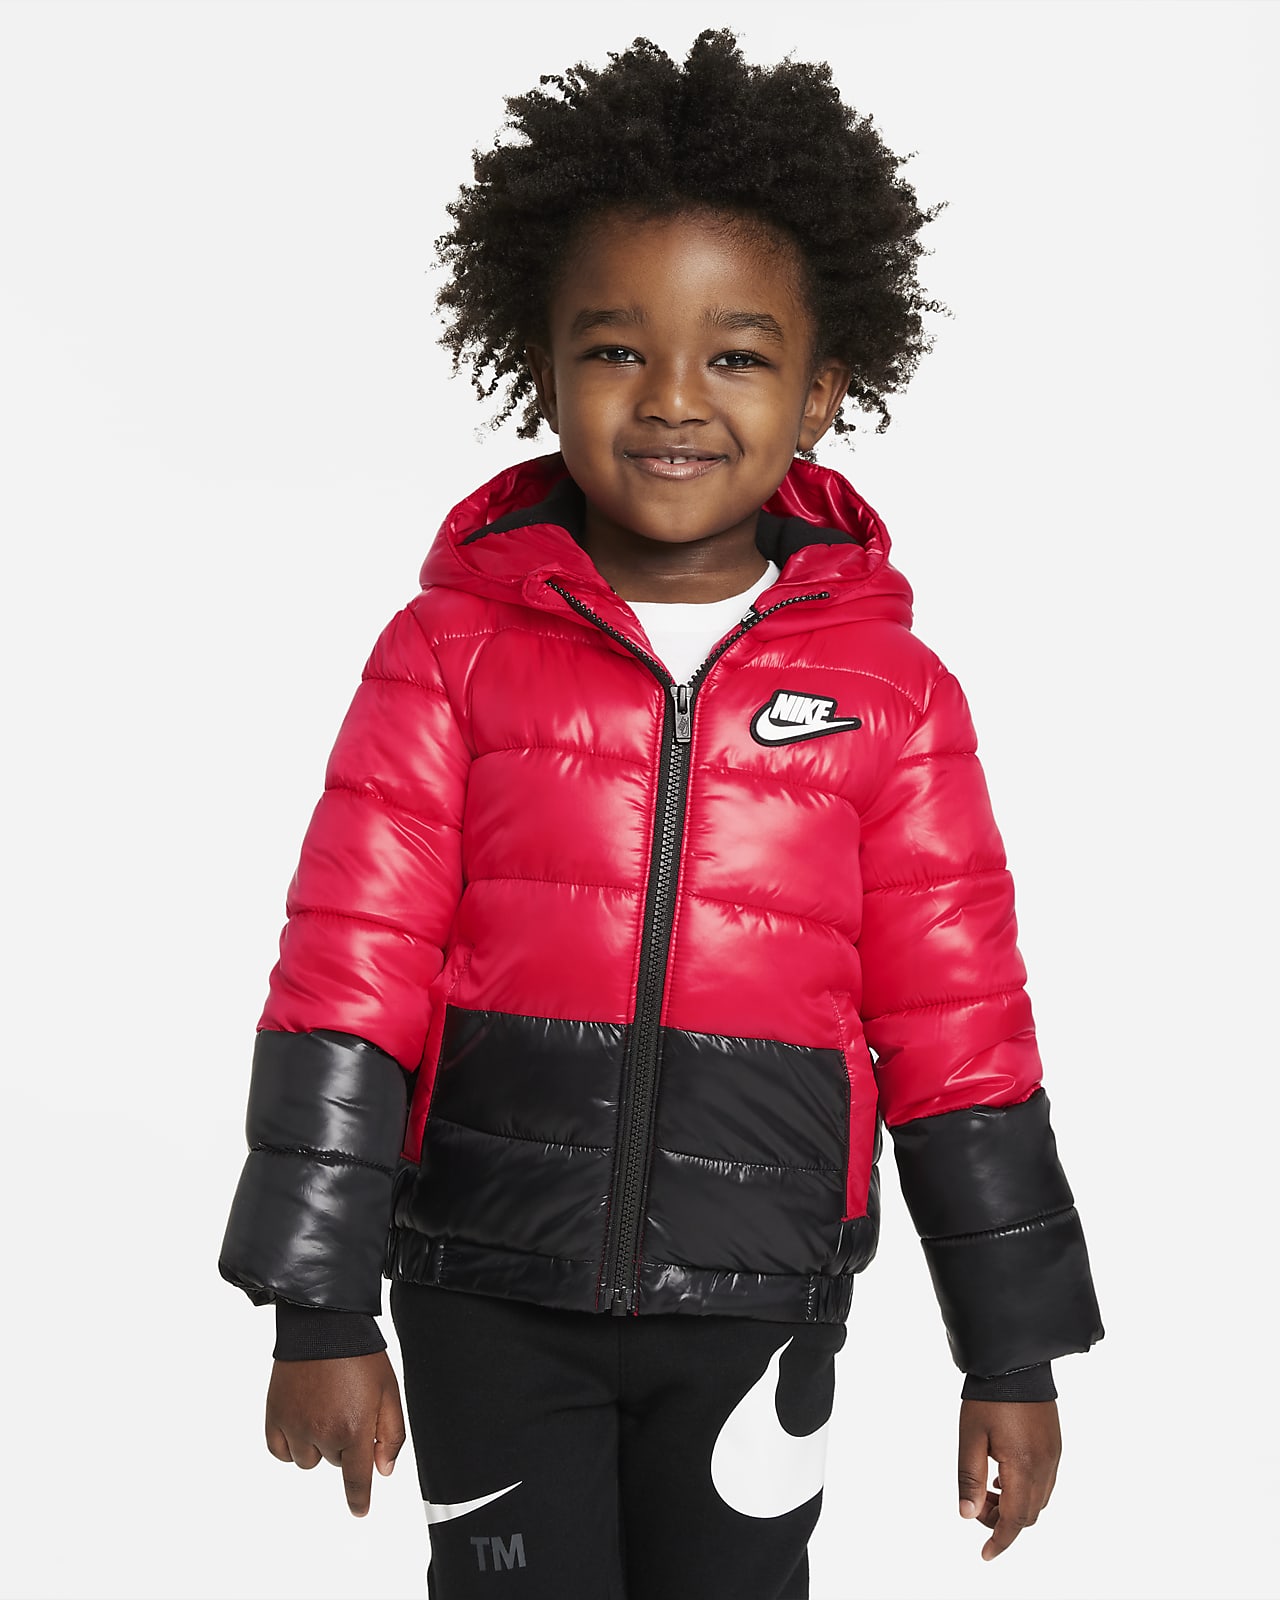 Nike Sportswear Toddler Puffer Jacket